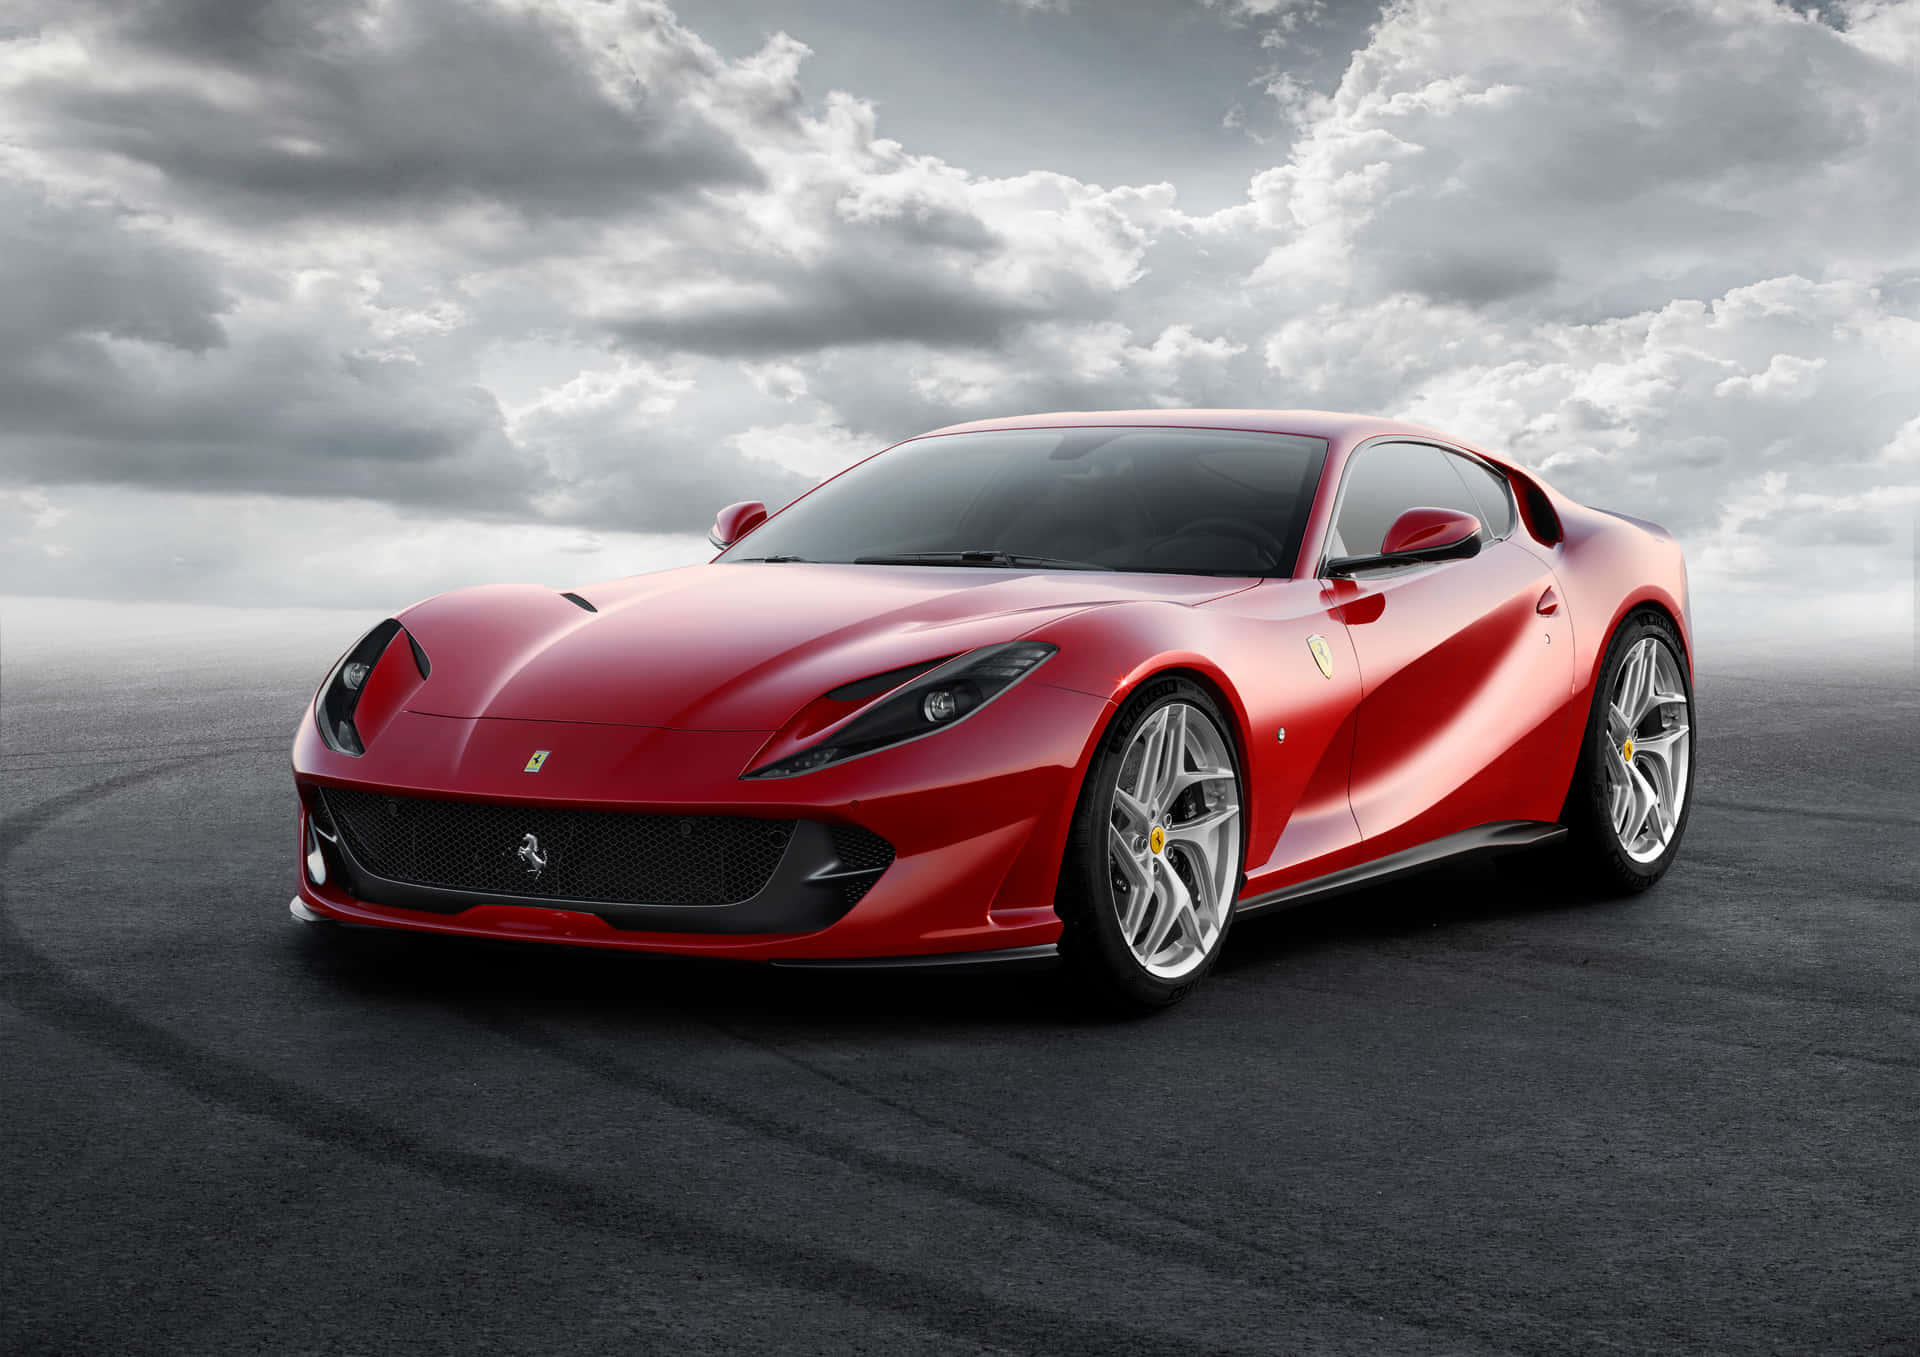 Fondos De Pantalla De Autos Ferrari Geniales Fondo de pantalla